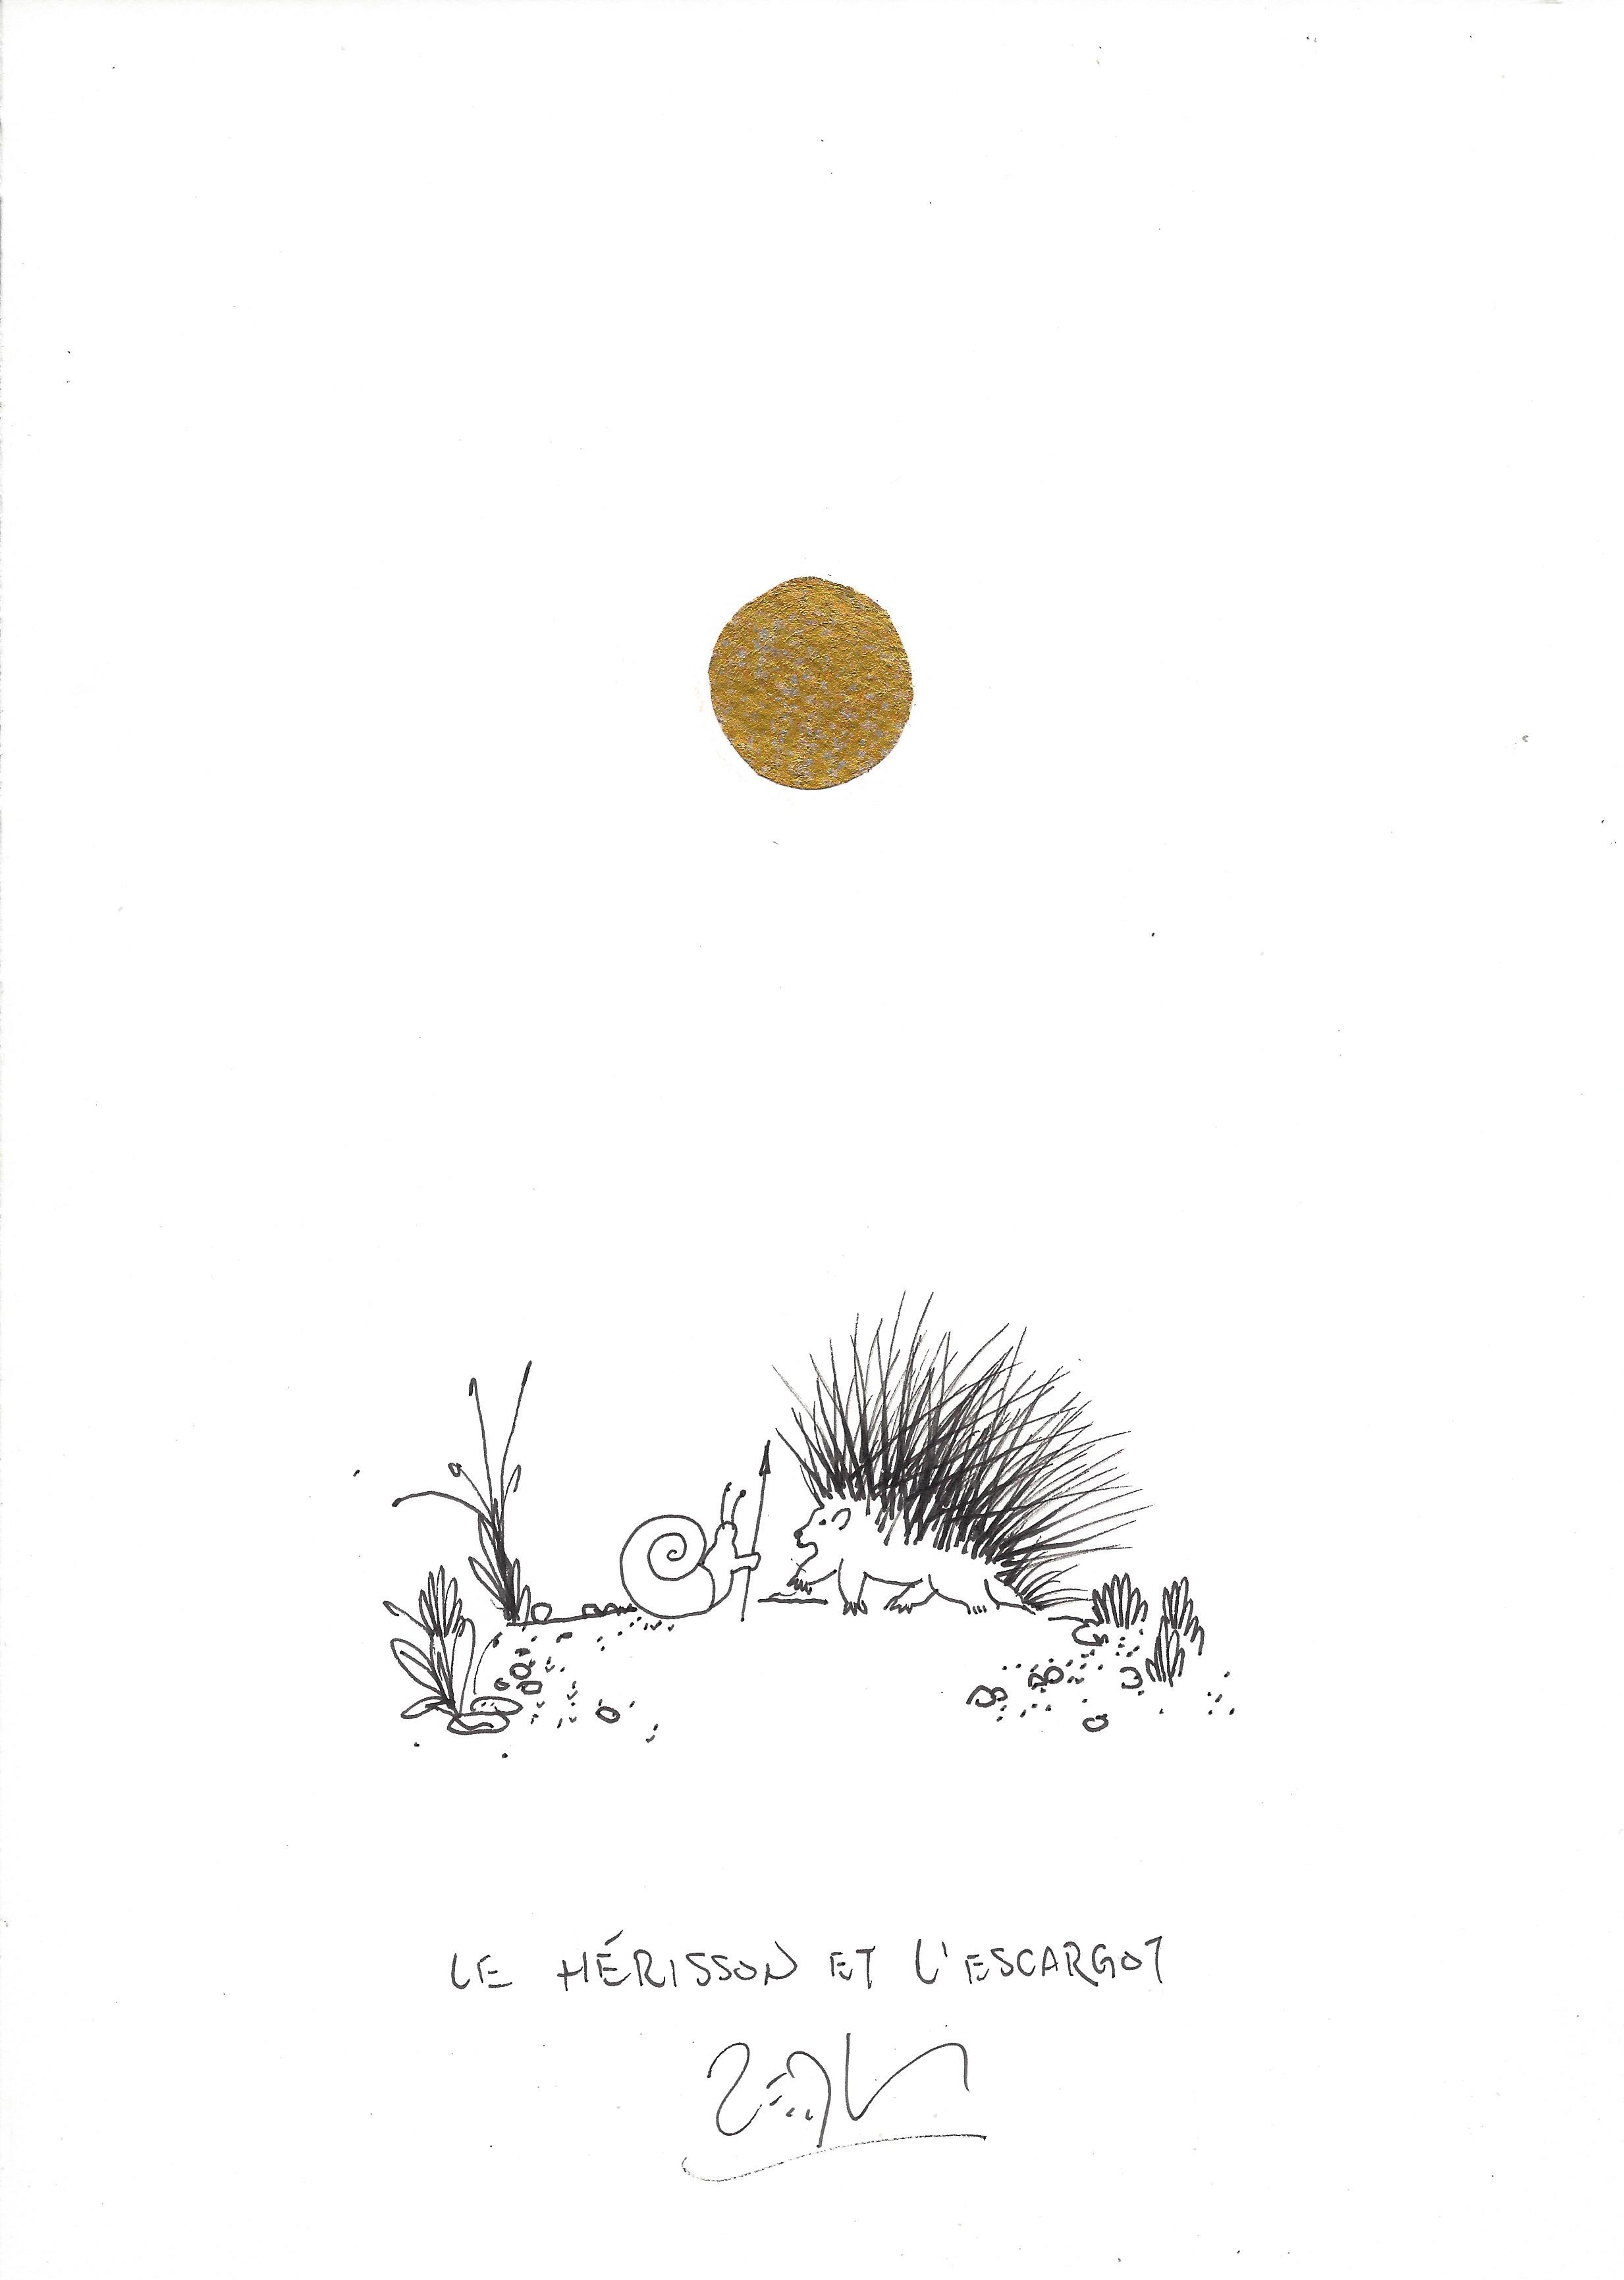 « The hedgehog and the snail – Le hérisson et l’escargot »